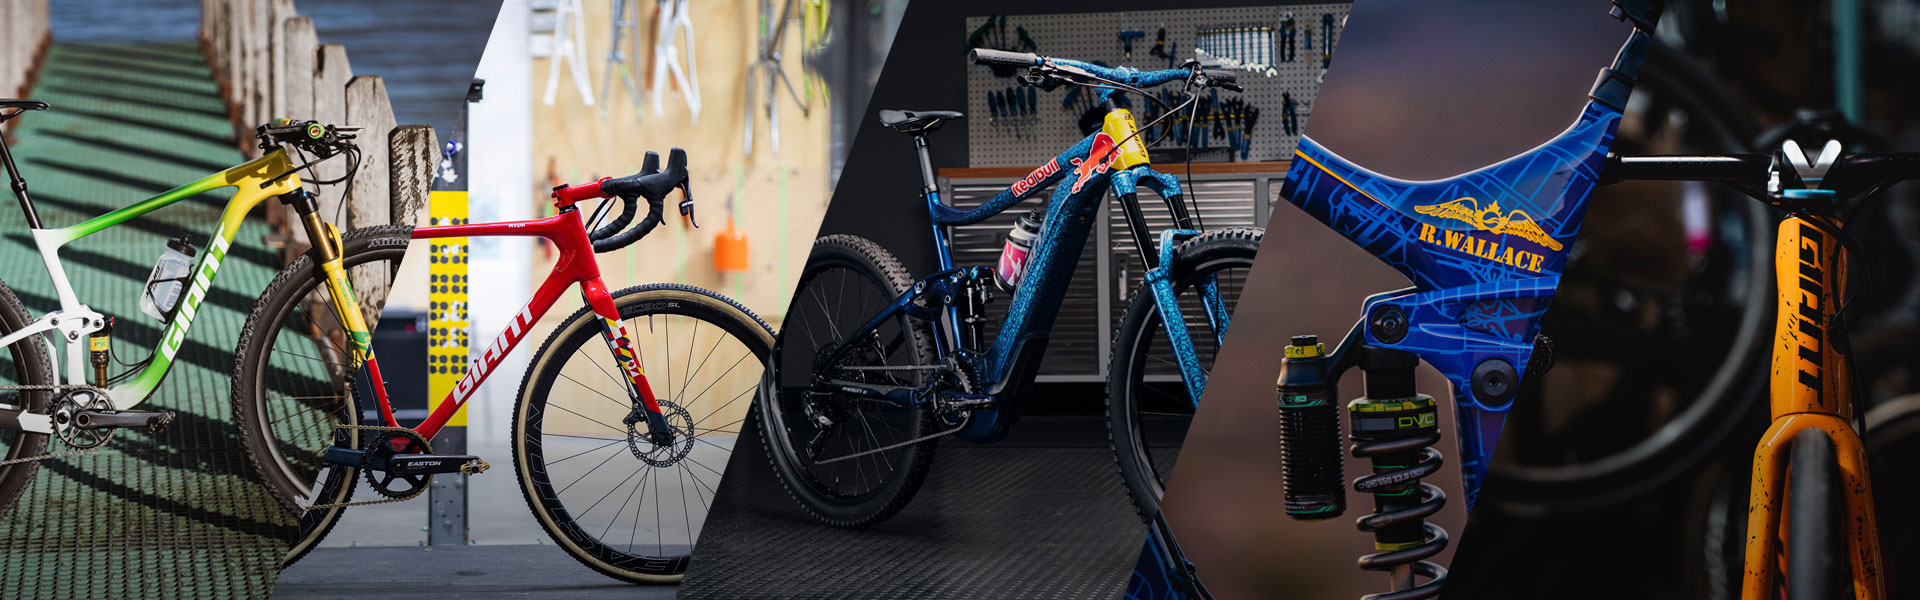 Broer Sijpelen Bijproduct 10 of the hottest Giant bikes of 2019! | Giant Bicycles Australia